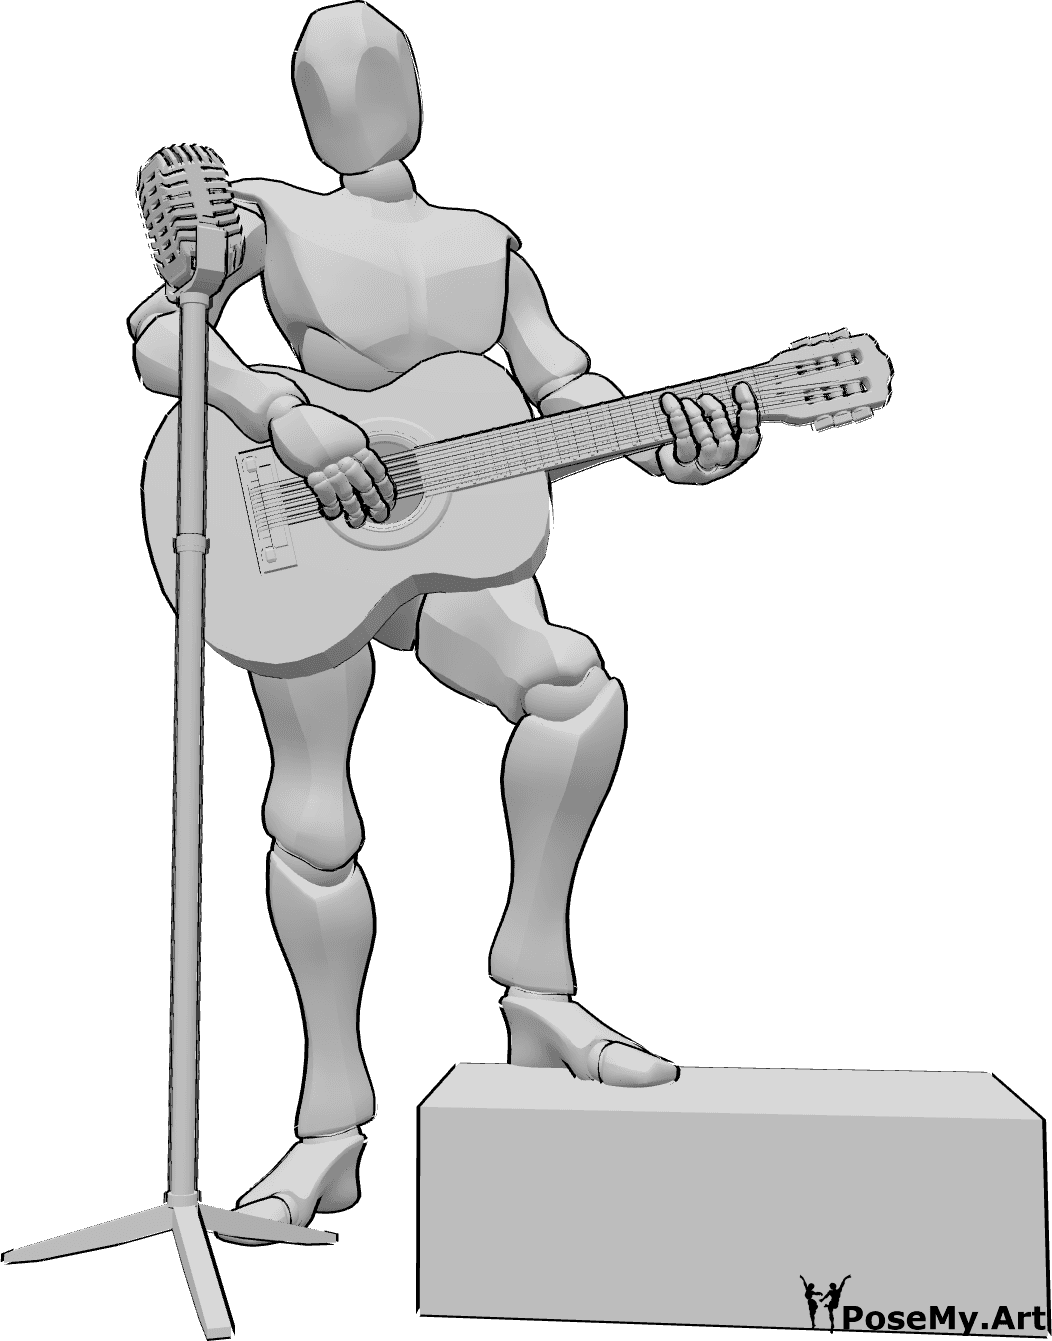 Riferimento alle pose- Concerto di chitarra in posa - Uomo che suona la chitarra e canta sul palco, riferimento per il disegno della chitarra